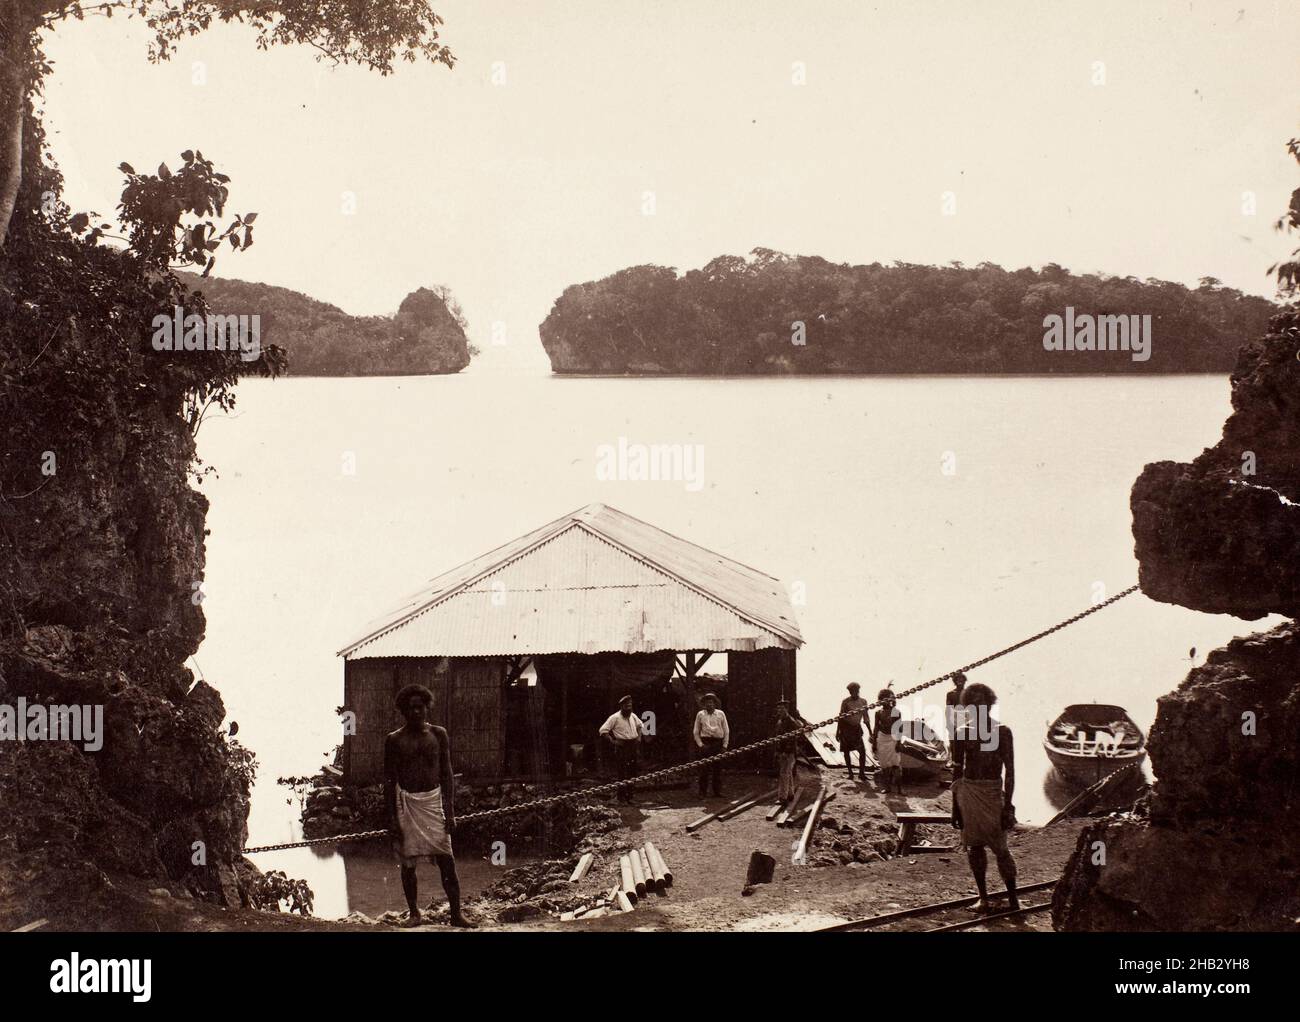 La lagune - Mango - Fidji, Burton Brothers studio, studio de photographie, fin du 19th siècle, Dunedin,photographie Banque D'Images